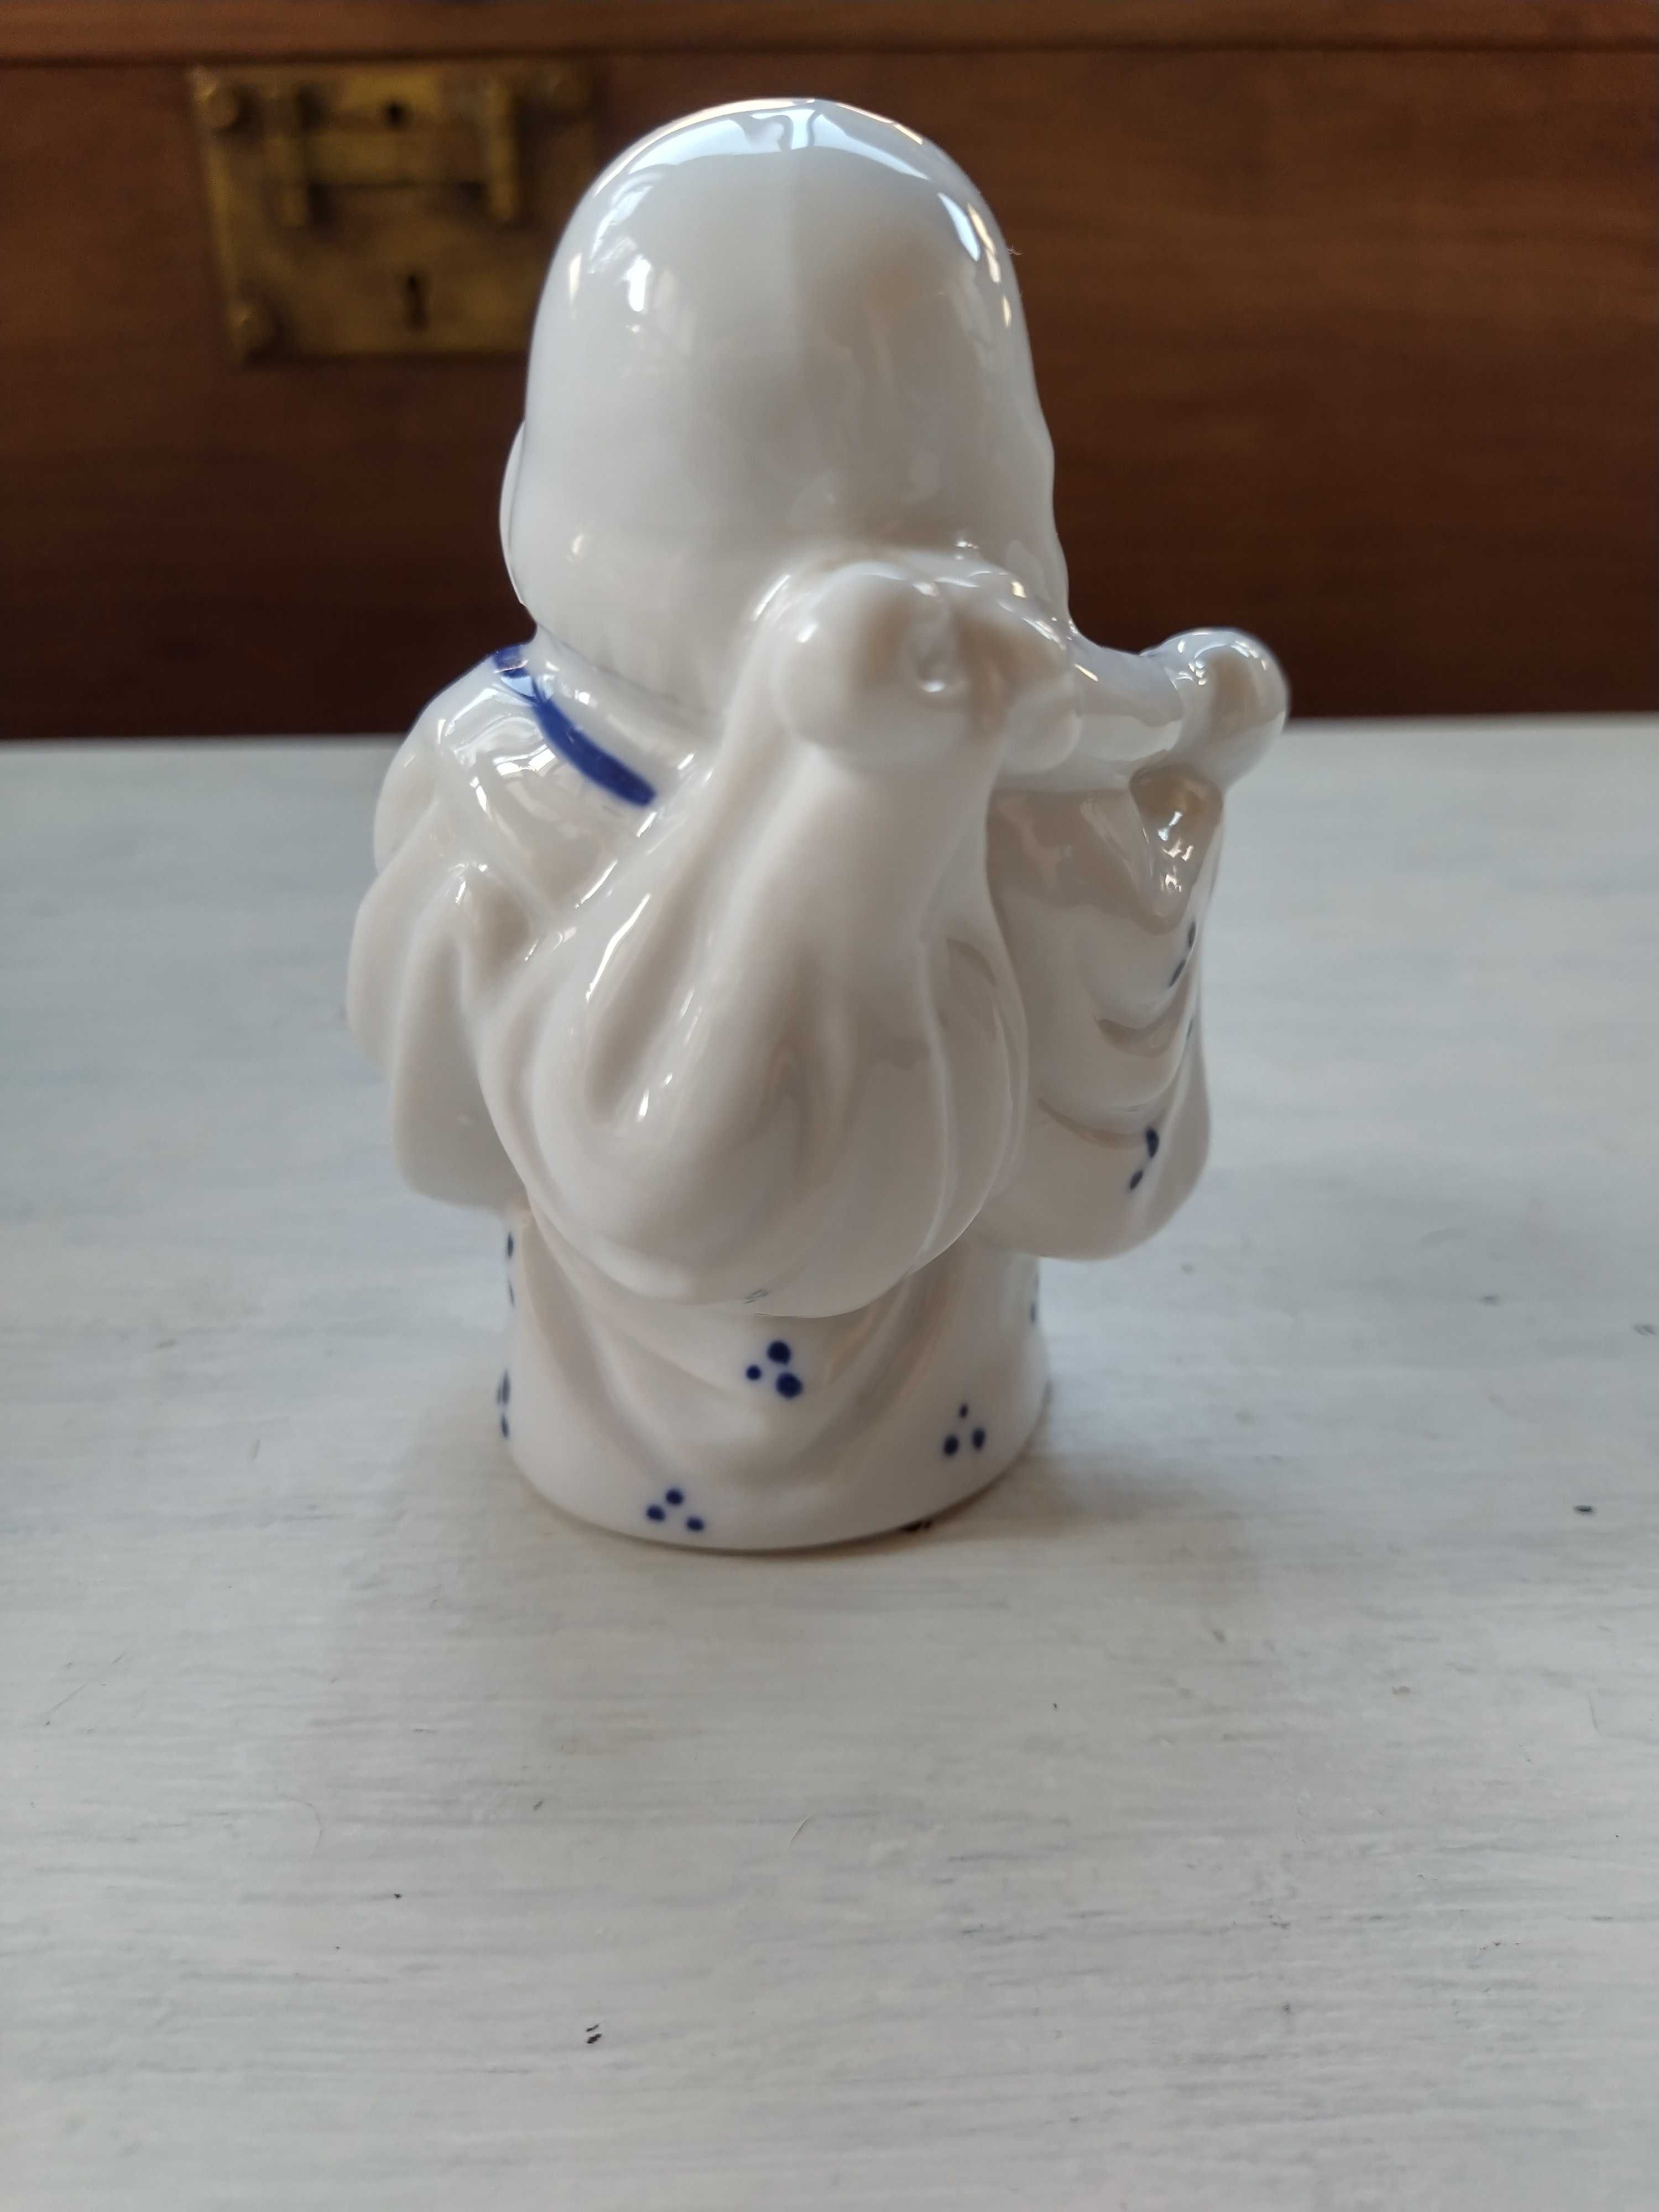 Raro buda oriental em porcelana